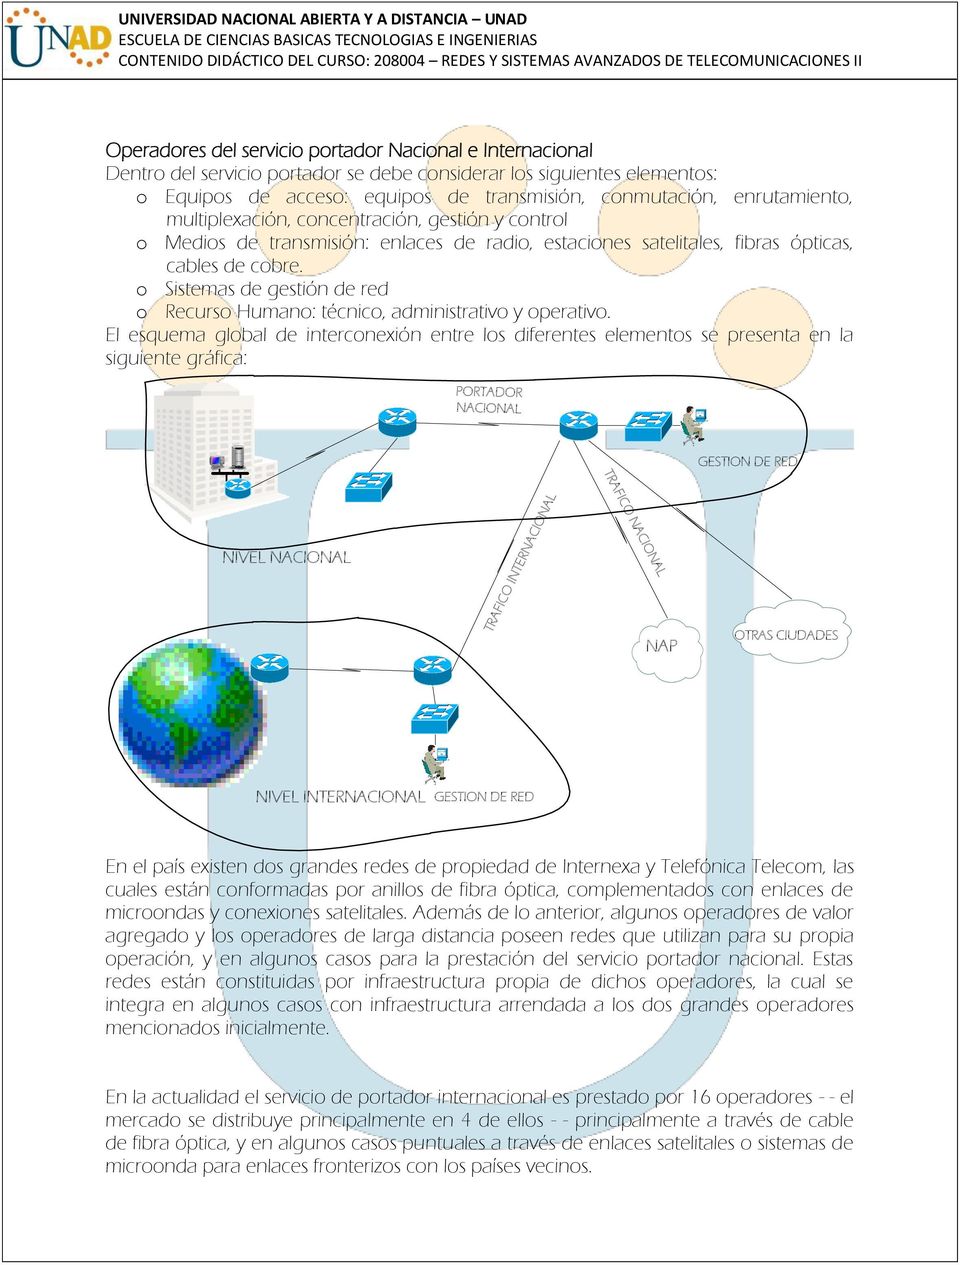 o Sistemas de gestión de red o Recurso Humano: técnico, administrativo y operativo.